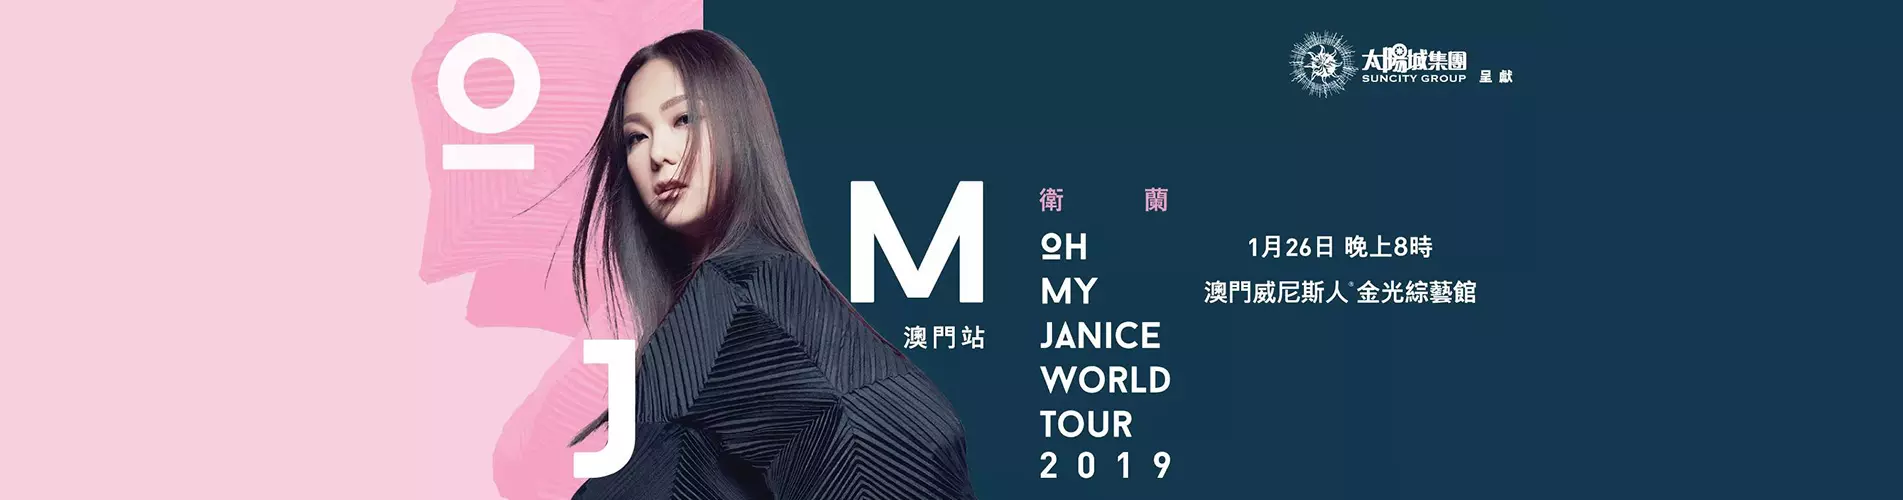 衛蘭OH MY JANICE世界巡迴演唱會2019 - 澳門站